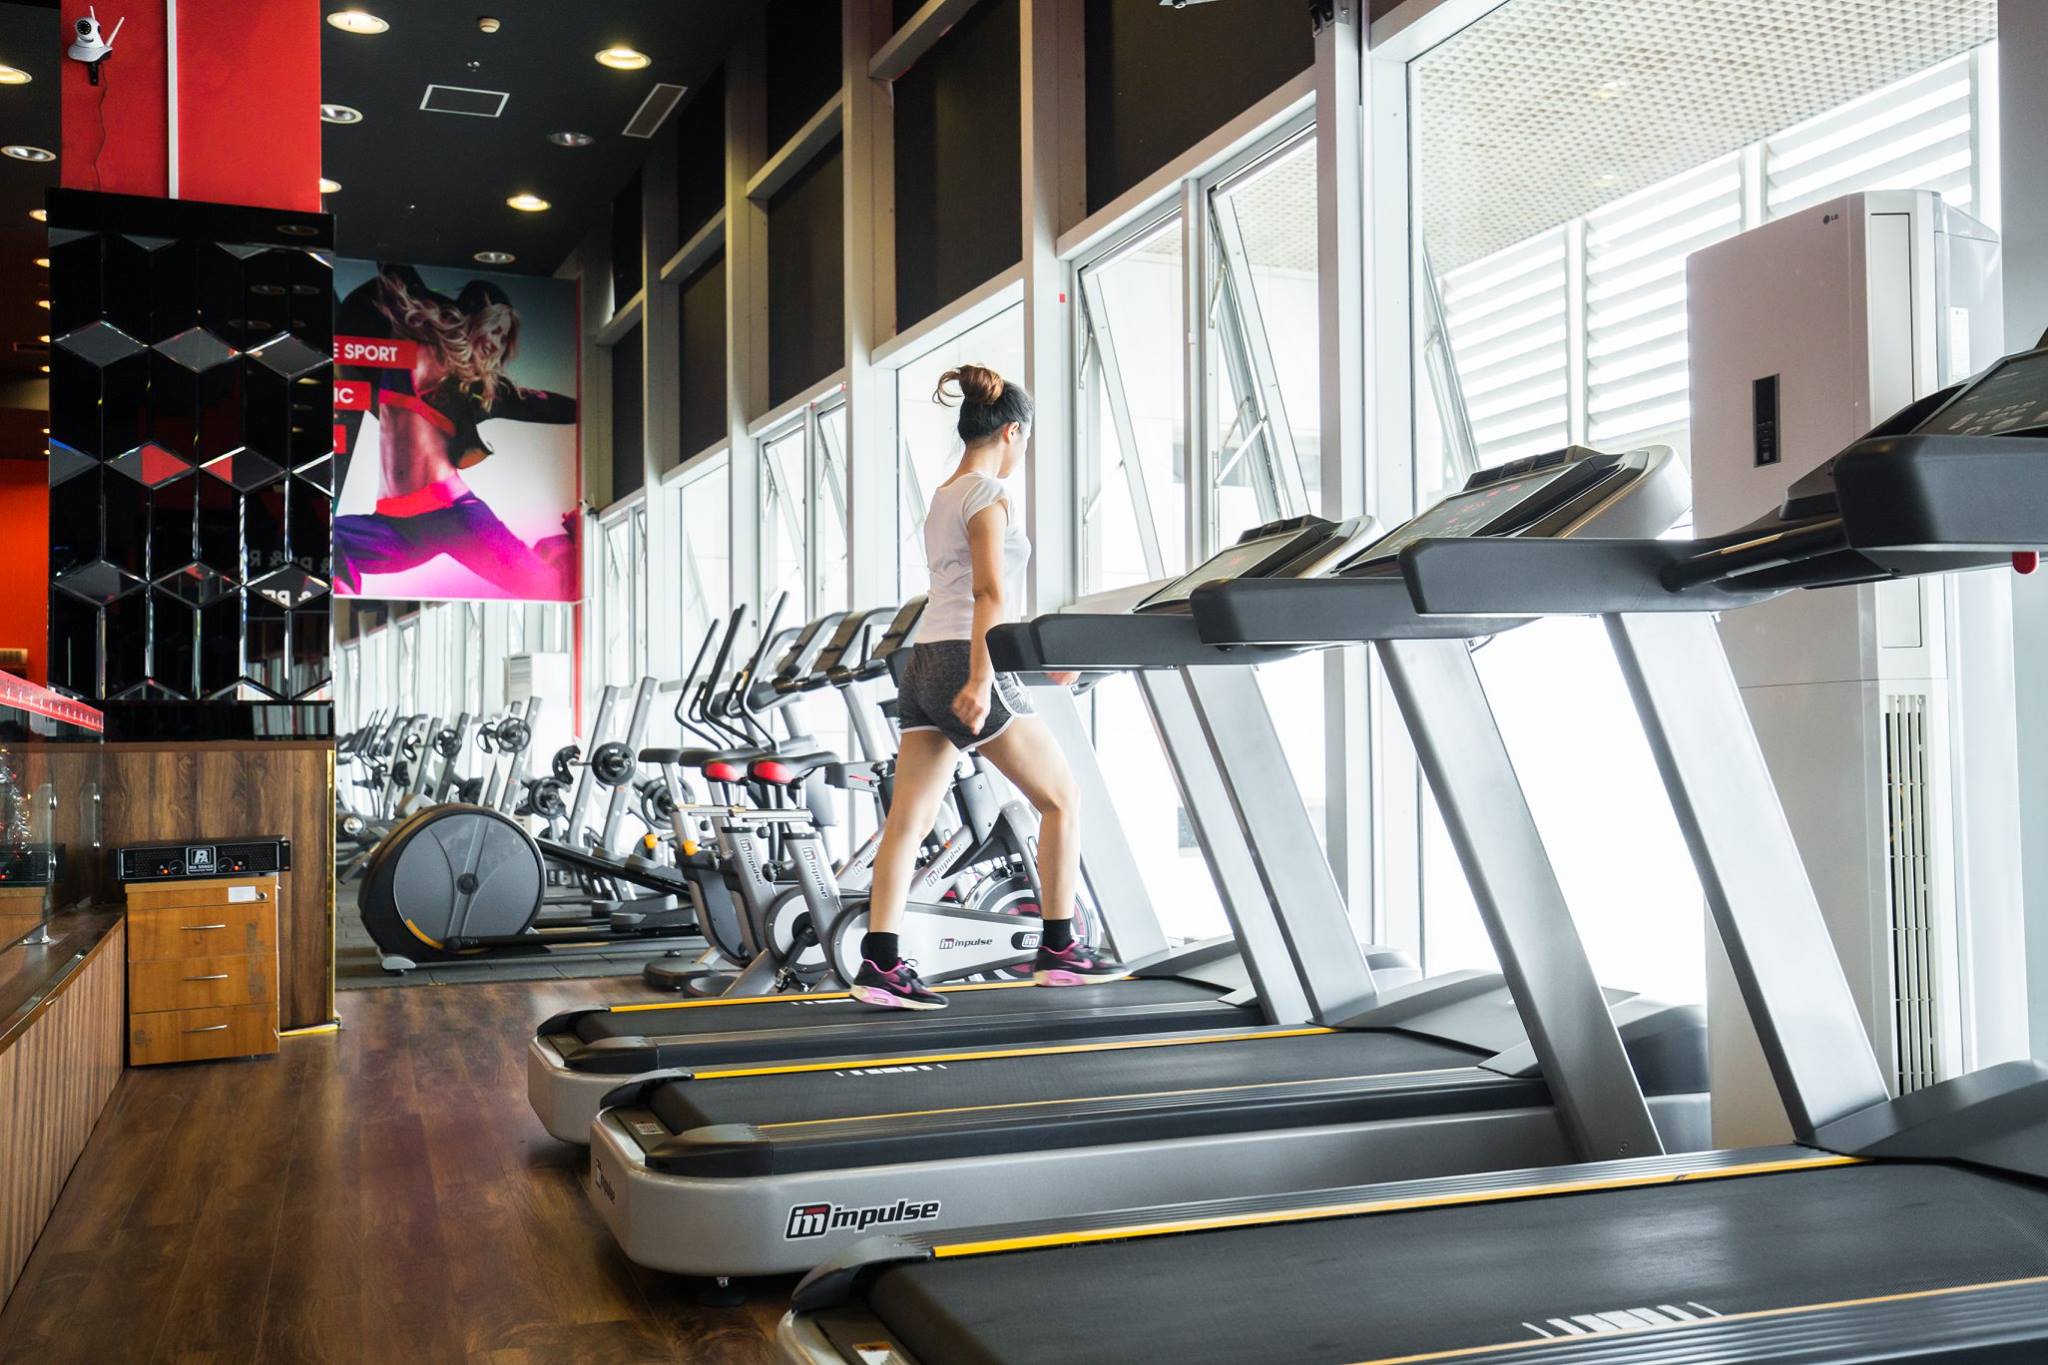 Dàn máy chạy Impulse phòng gym thương mại Spring Fitness tại Hà Nội